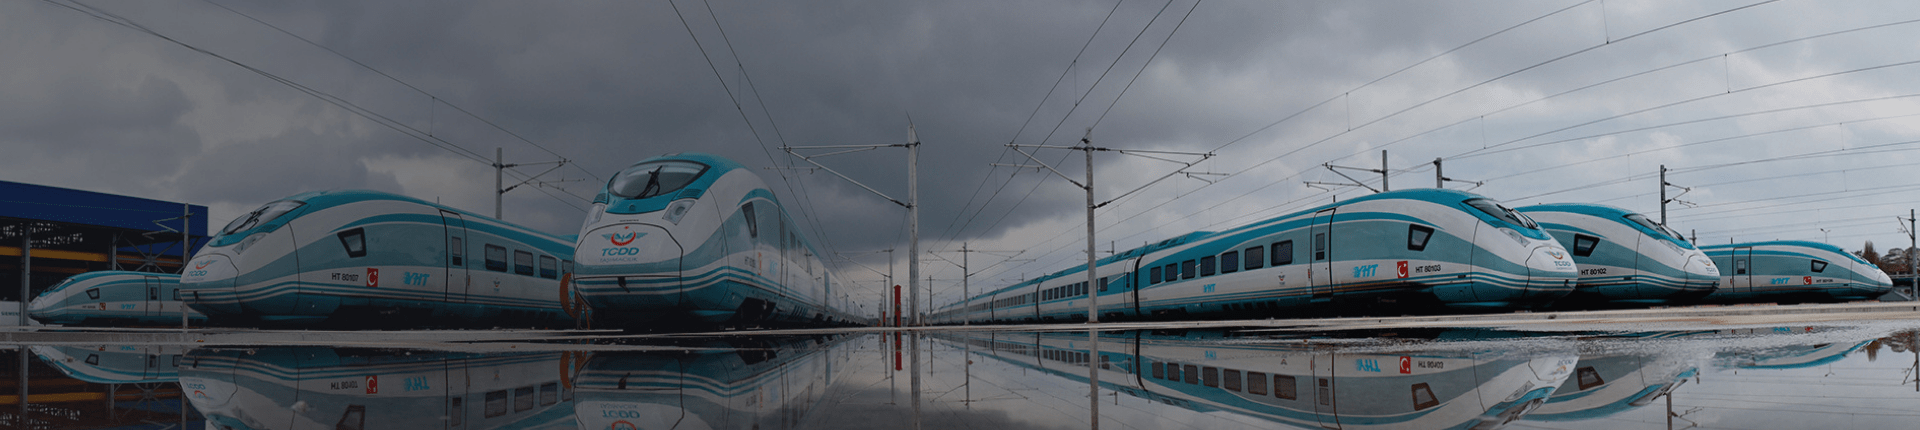 Türkiye’deki Yüksek Hızlı Tren (YHT) Hatları